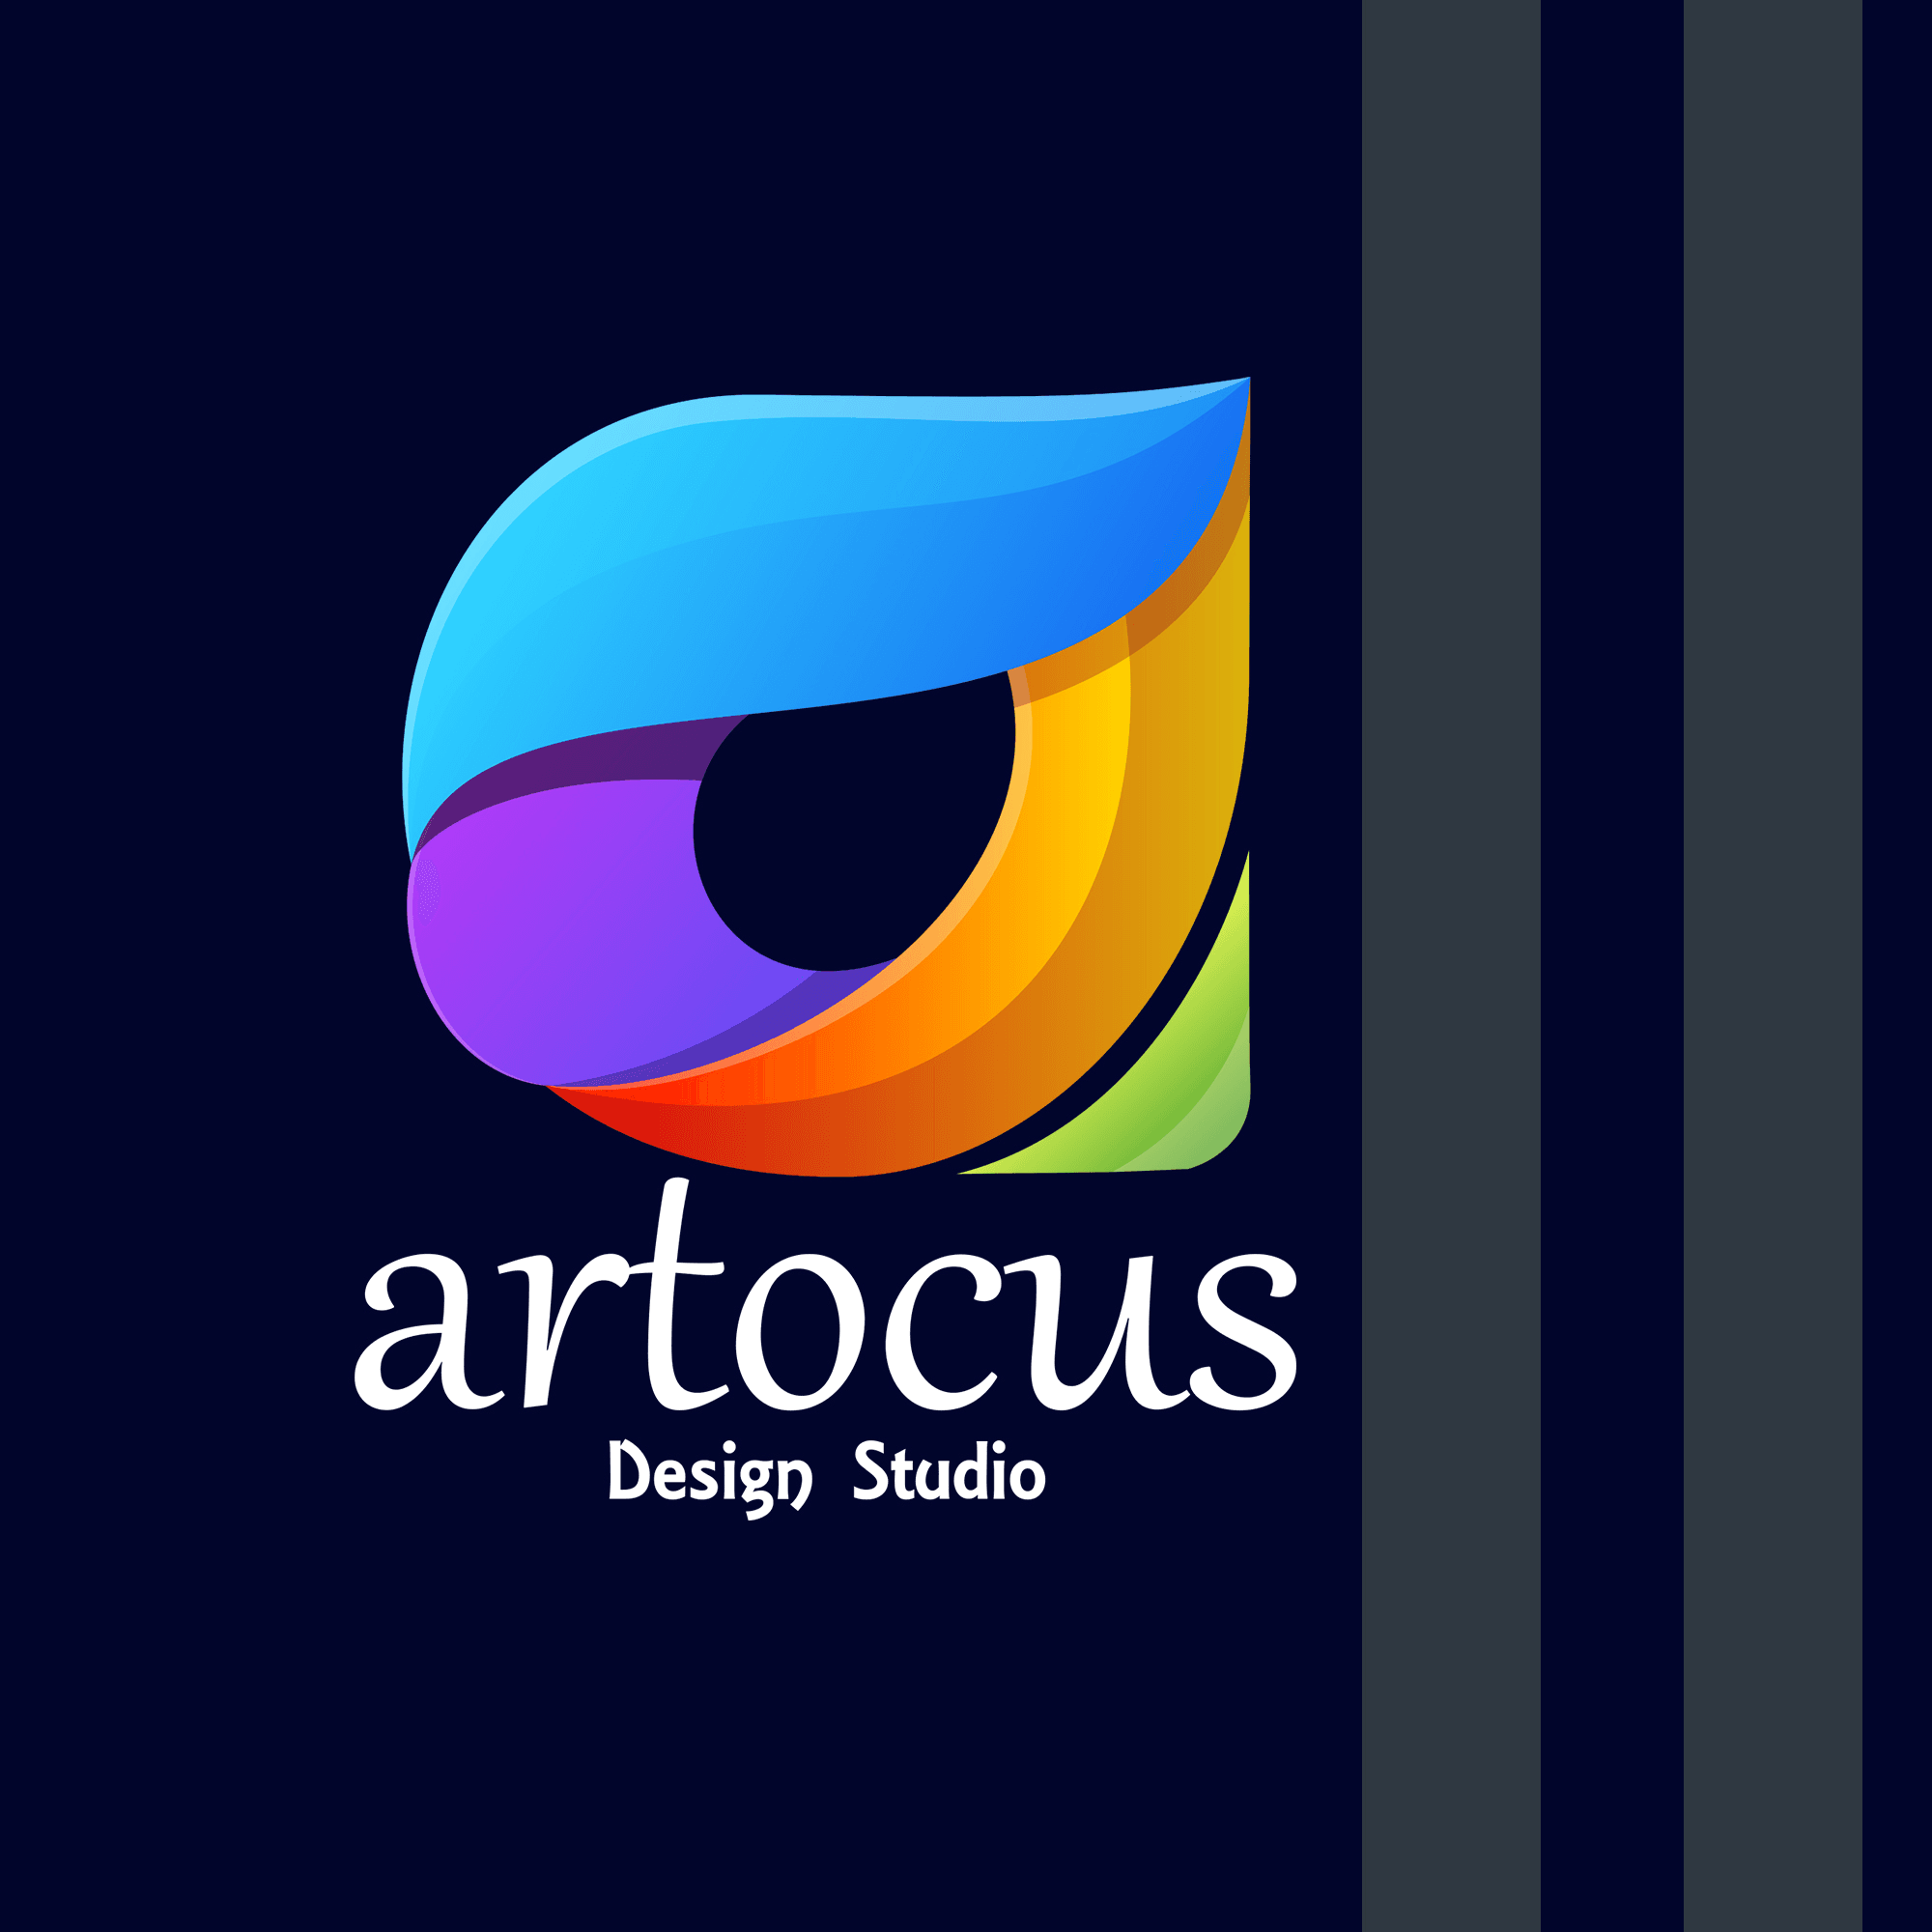 Artocus_Design_Studio